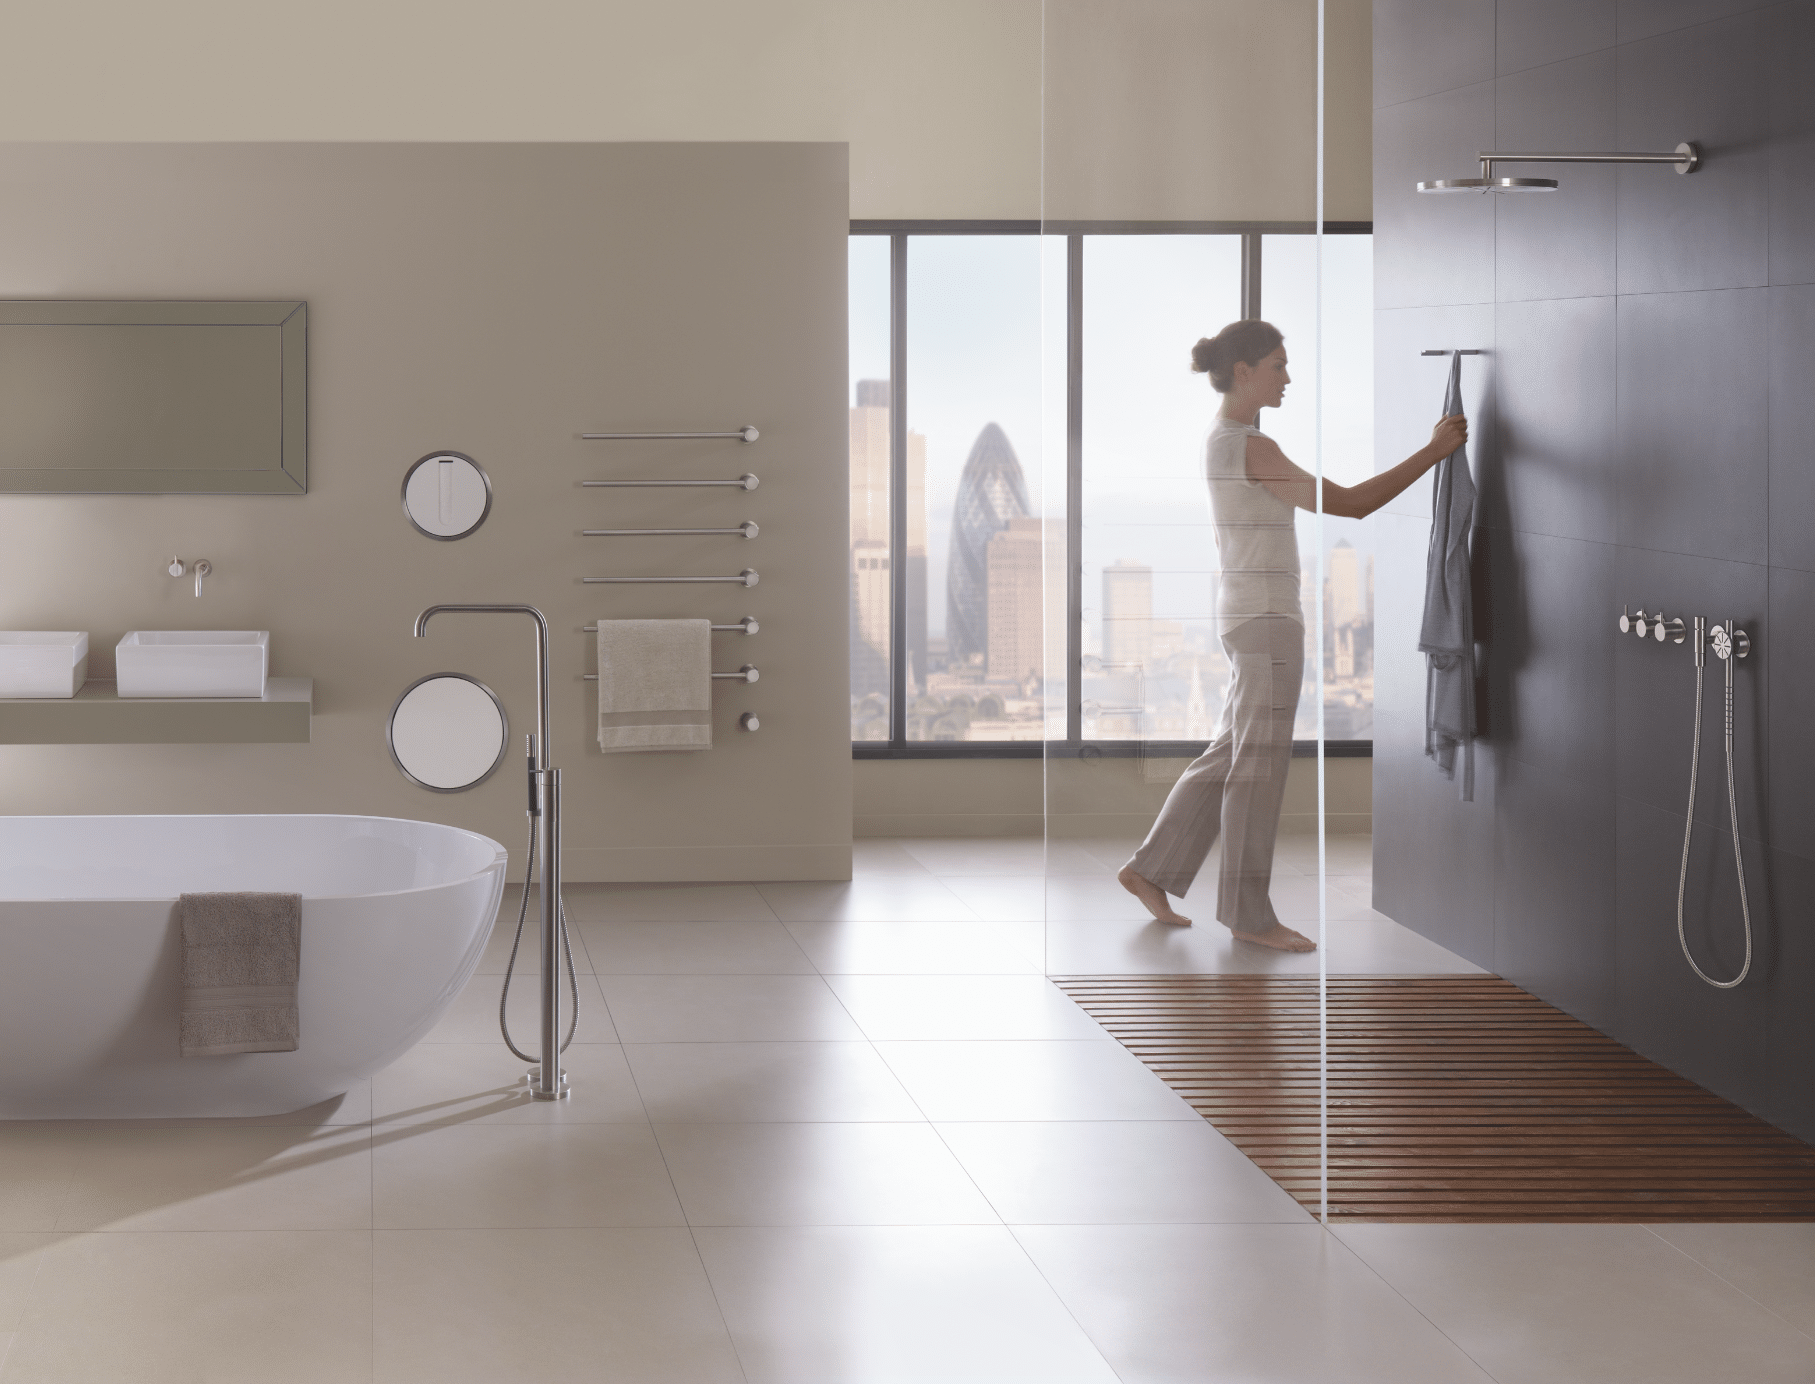 VOLA zeigt ein Badezimmer mit hellem Fliesenboden, einem Doppelwaschtisch mit eckigen Waschbecken und einer freistehenden Badewanne neben einer ebenerdigen Duschkabine mit Glaswänden.